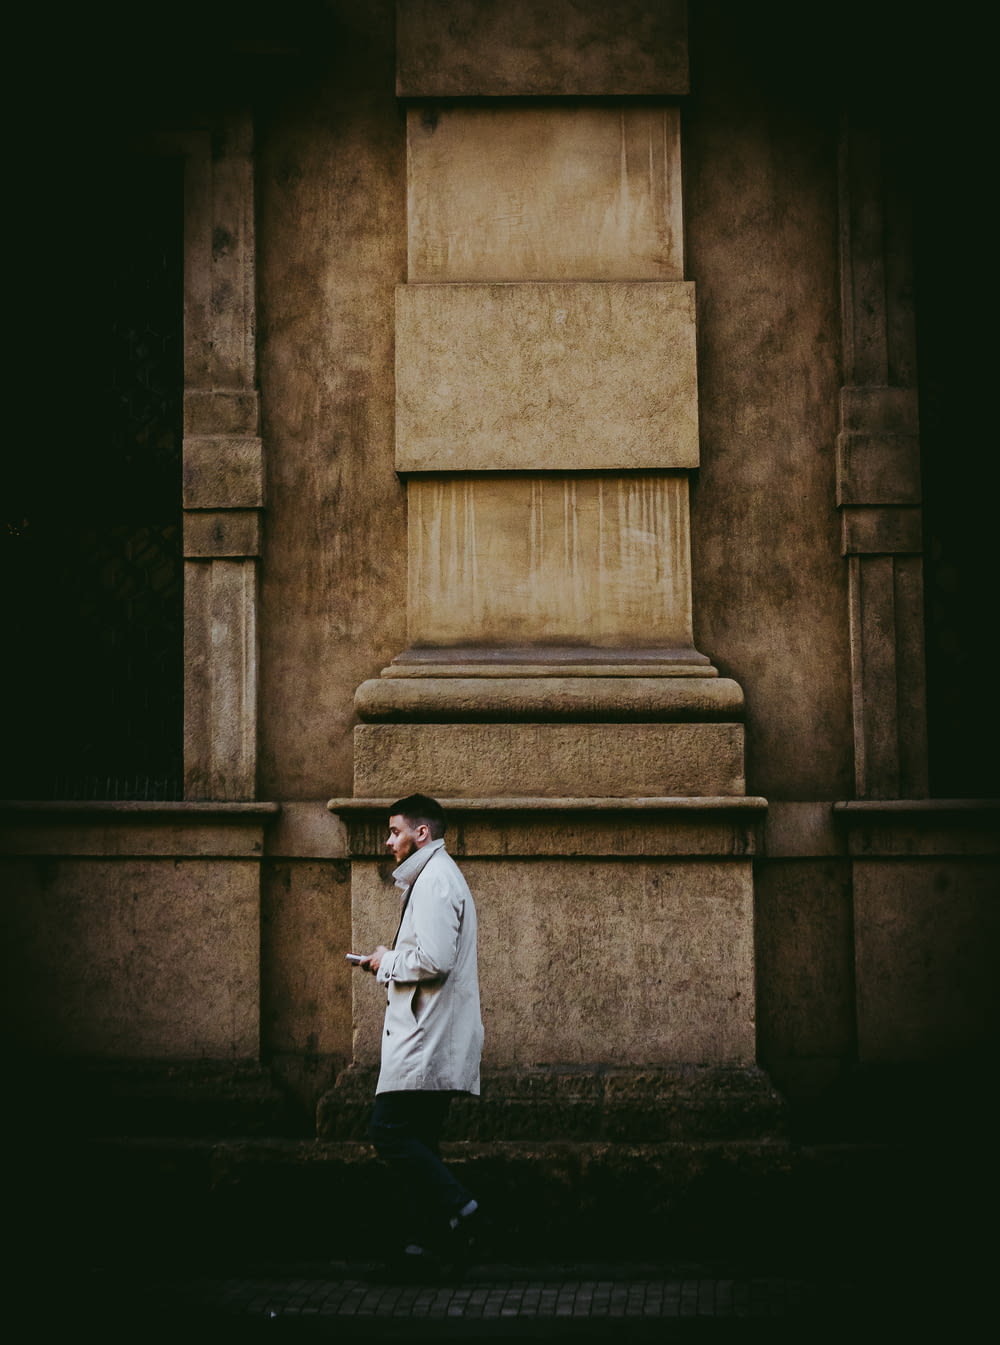 man in white coat walking beside wall